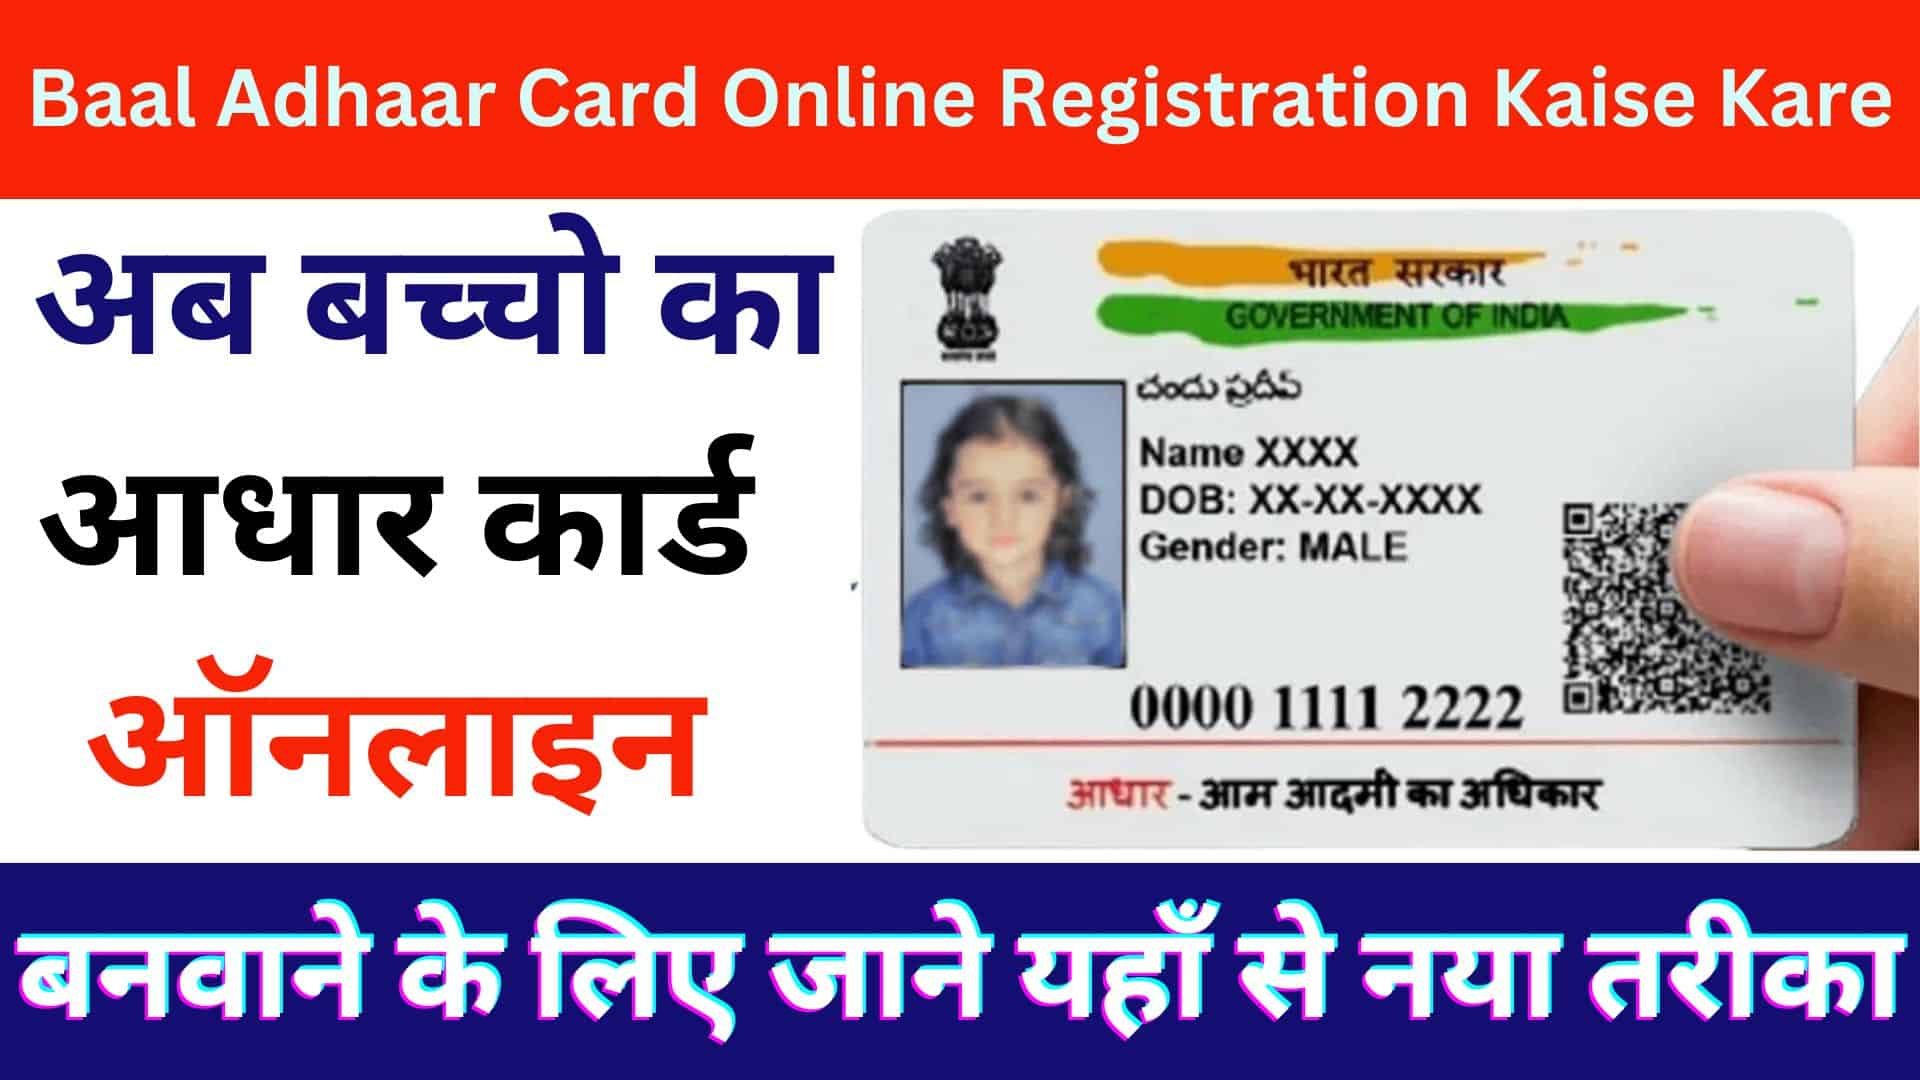 Baal Adhaar Card Online Registration Kaise Kare : अब बच्चो का आधार कार्ड ऑनलाइन बनवाने के लिए जाने यहाँ से नया तरीका